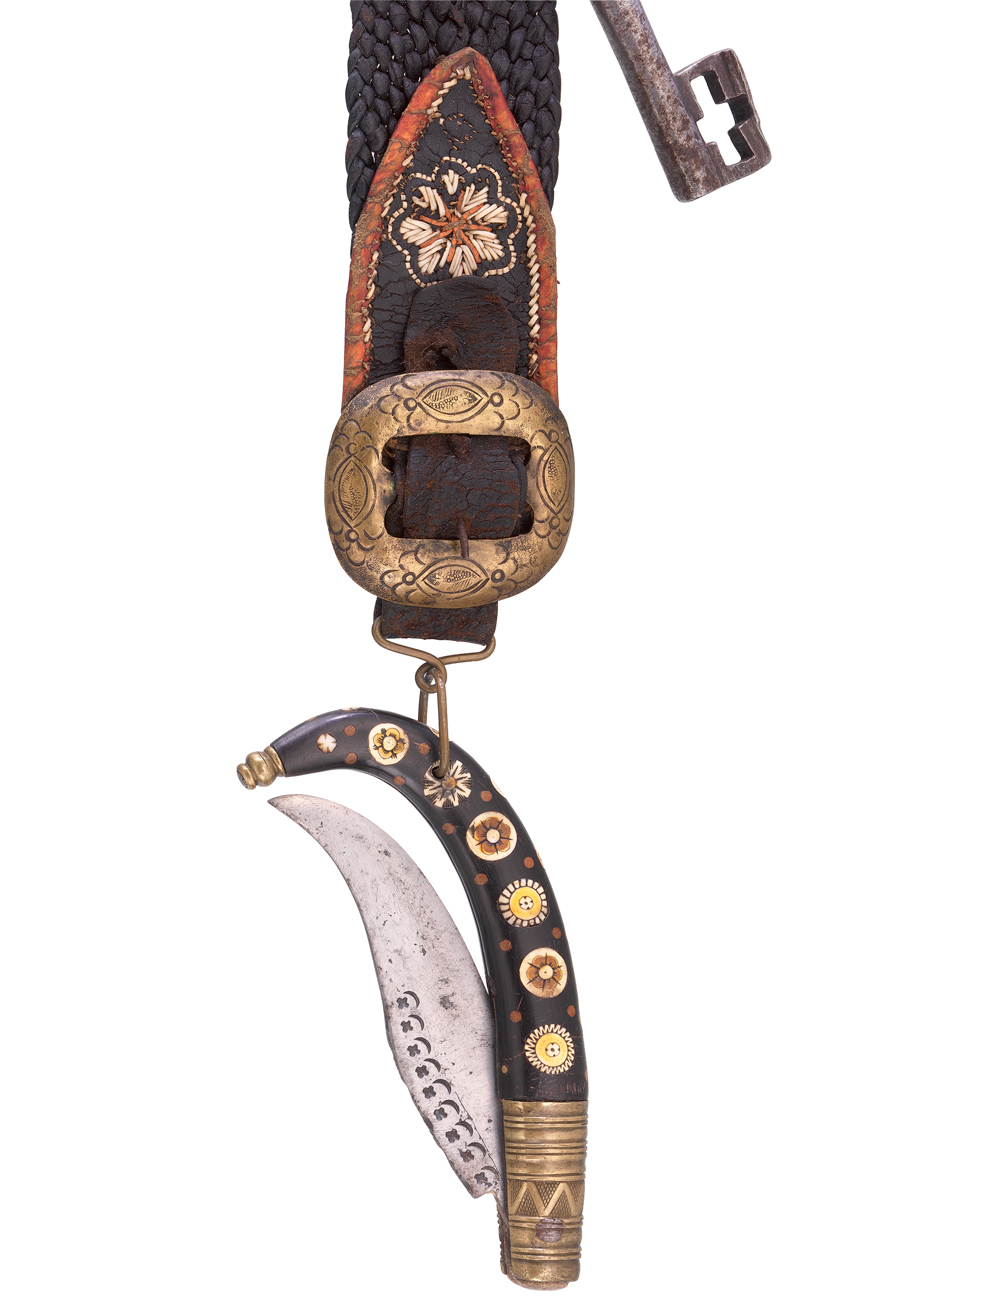 Dieser Gürtelriemen aus braunem Leder wurde Mitte des 19. Jahrhunderts in Tirol gefertigt. Seitlich an ihm ist ein rostiger Schlüssel befestigt, an der Messingschnalle pendelt ein mit Blumenintarsien verziertes Klappmesser.